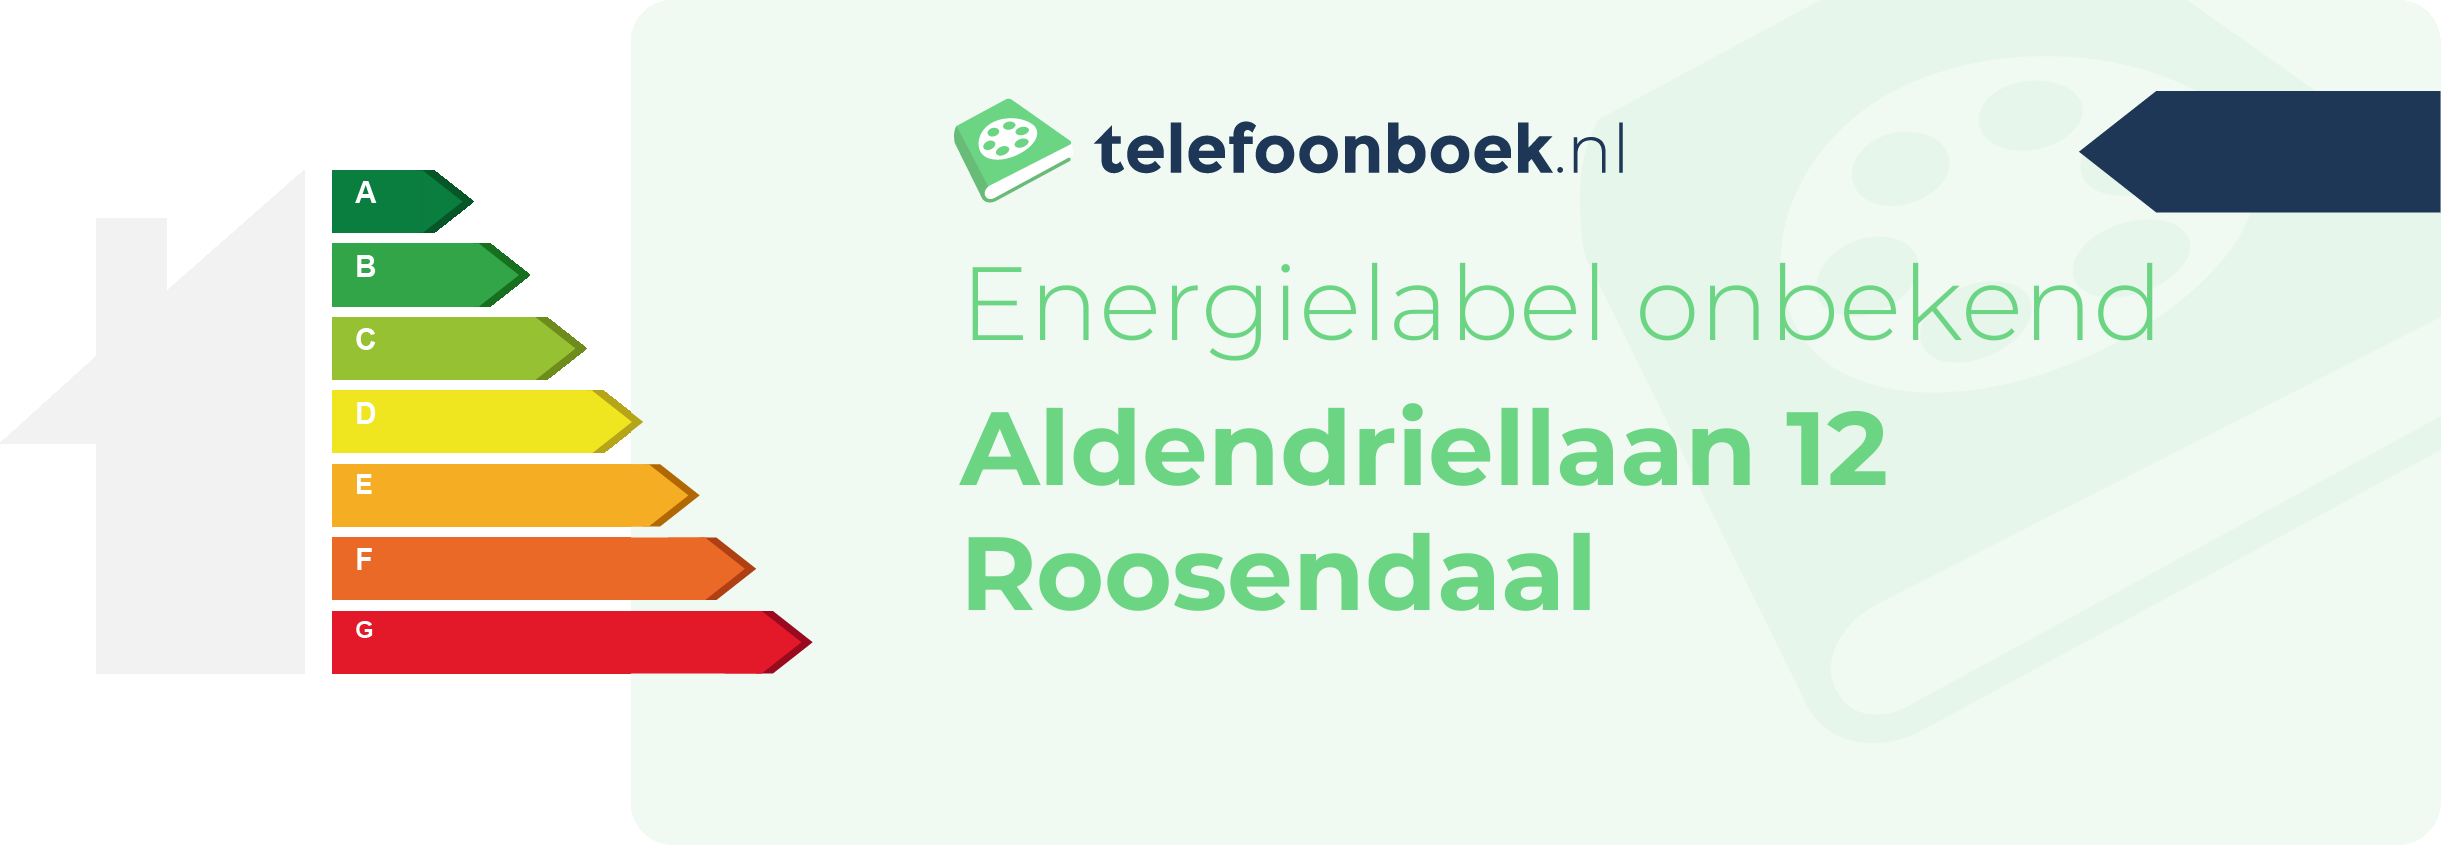 Energielabel Aldendriellaan 12 Roosendaal